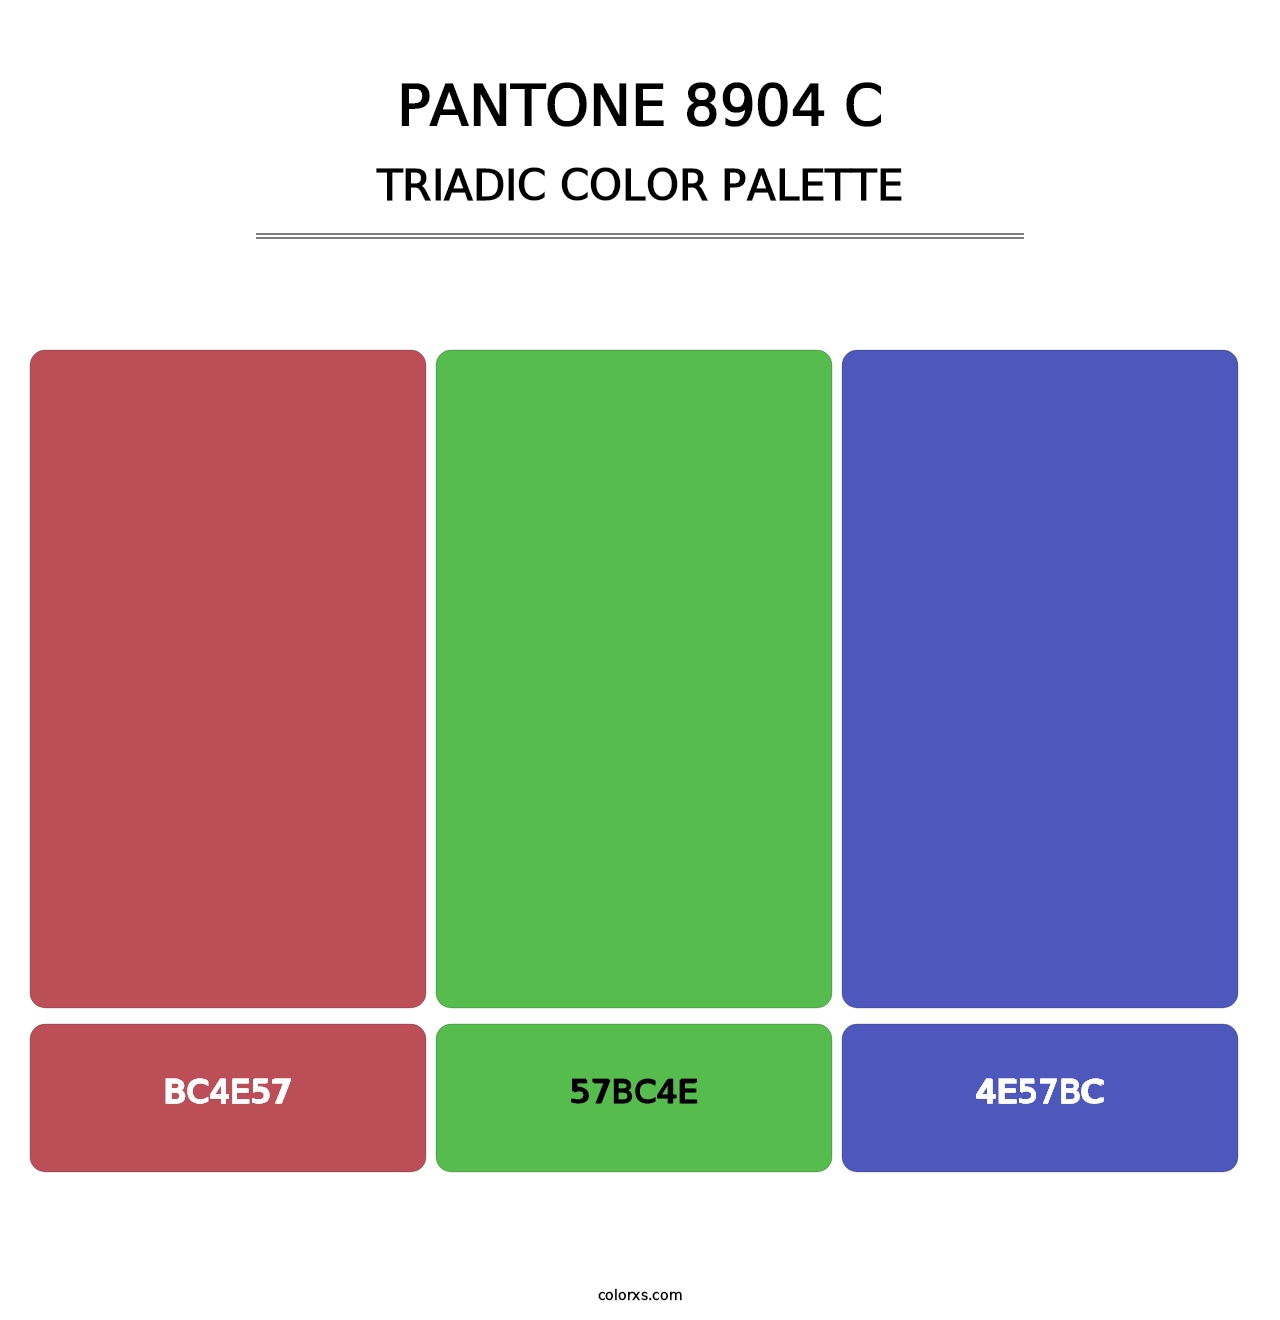 PANTONE 8904 C - Triadic Color Palette